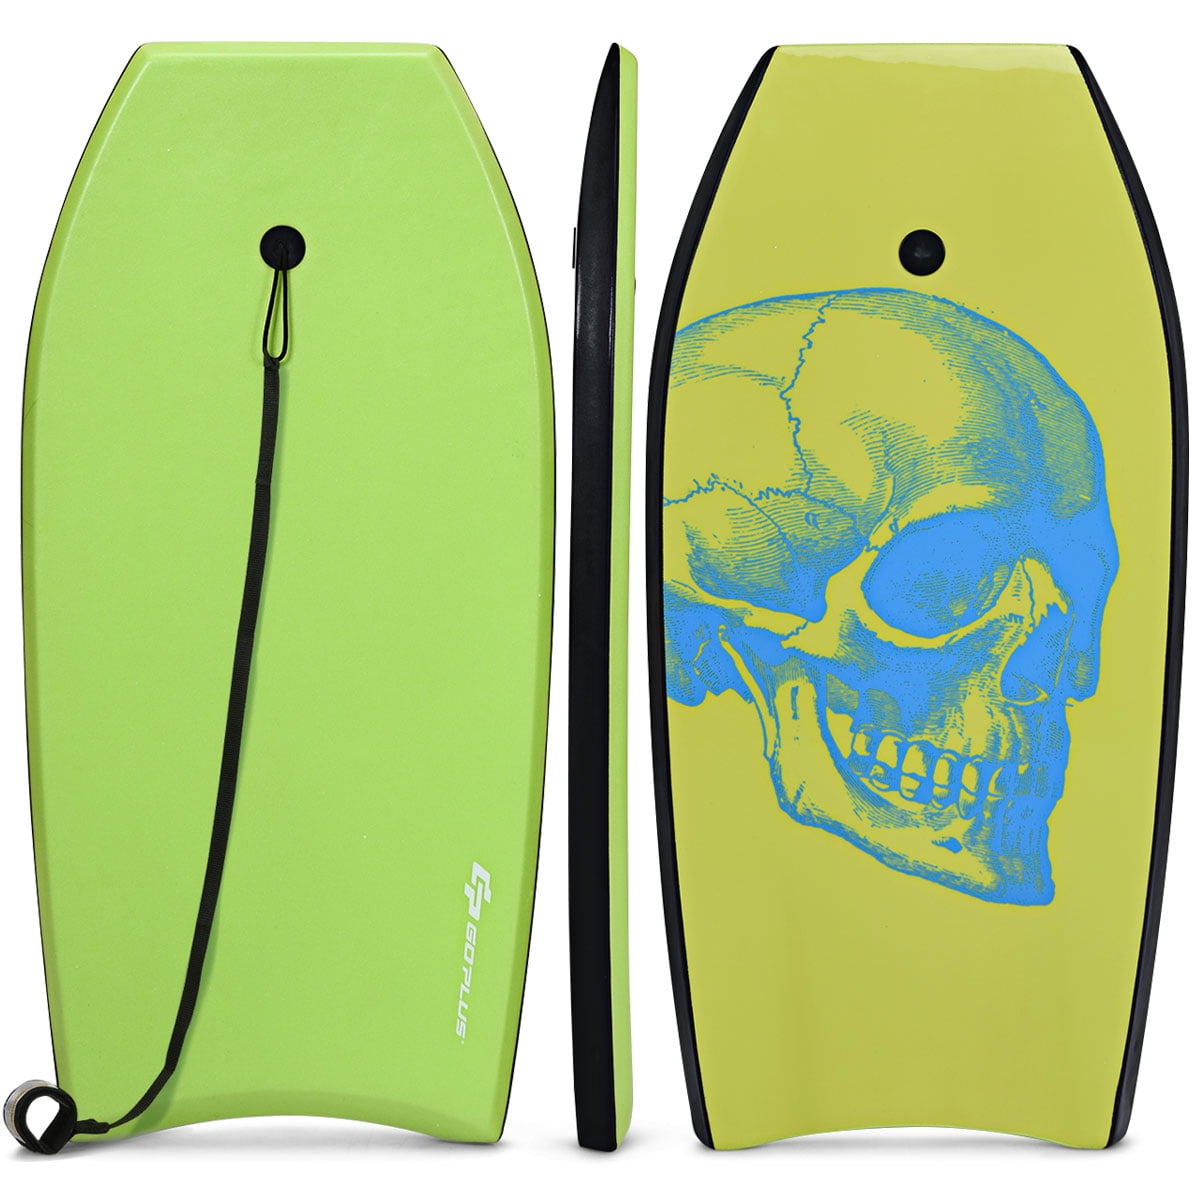 Green & Yellow 42" Lightweight Super Bodyboard w/ Leash IXPE Deck EPS Core Boar 